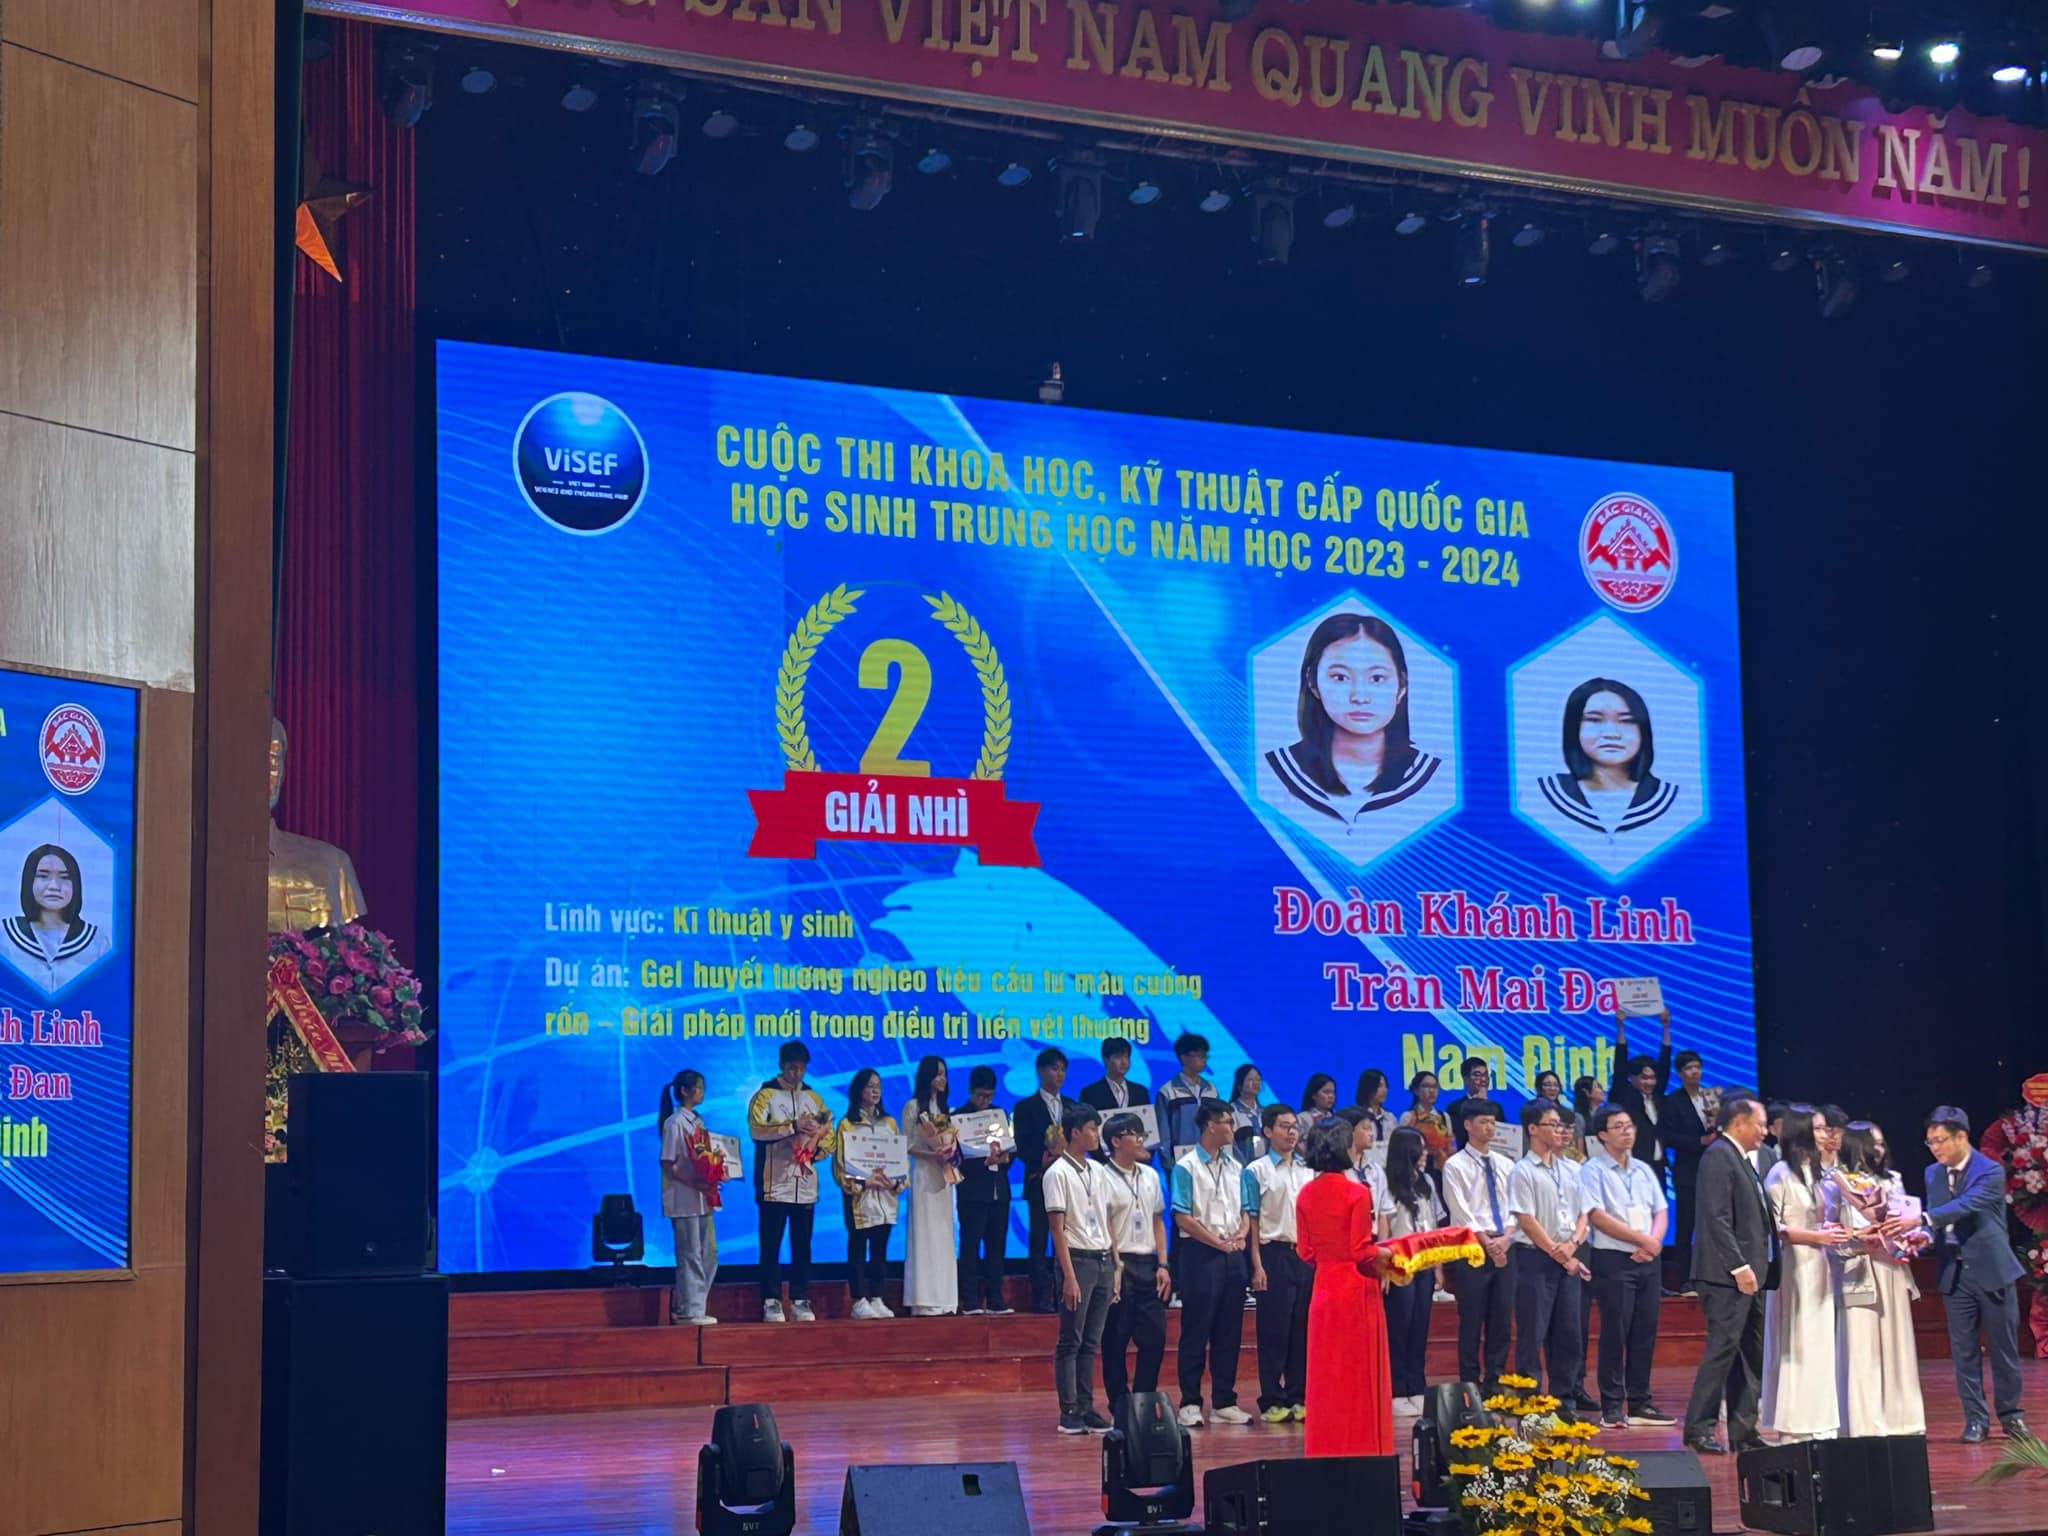 [Tin vui] Học sinh trường THPT chuyên Lê Hồng Phong đoạt giải Nhì cấp quốc gia Cuộc thi Khoa học kĩ thuật và được Trung ương Đoàn trao tặng huy hiệu "Tuổi trẻ sáng tạo"